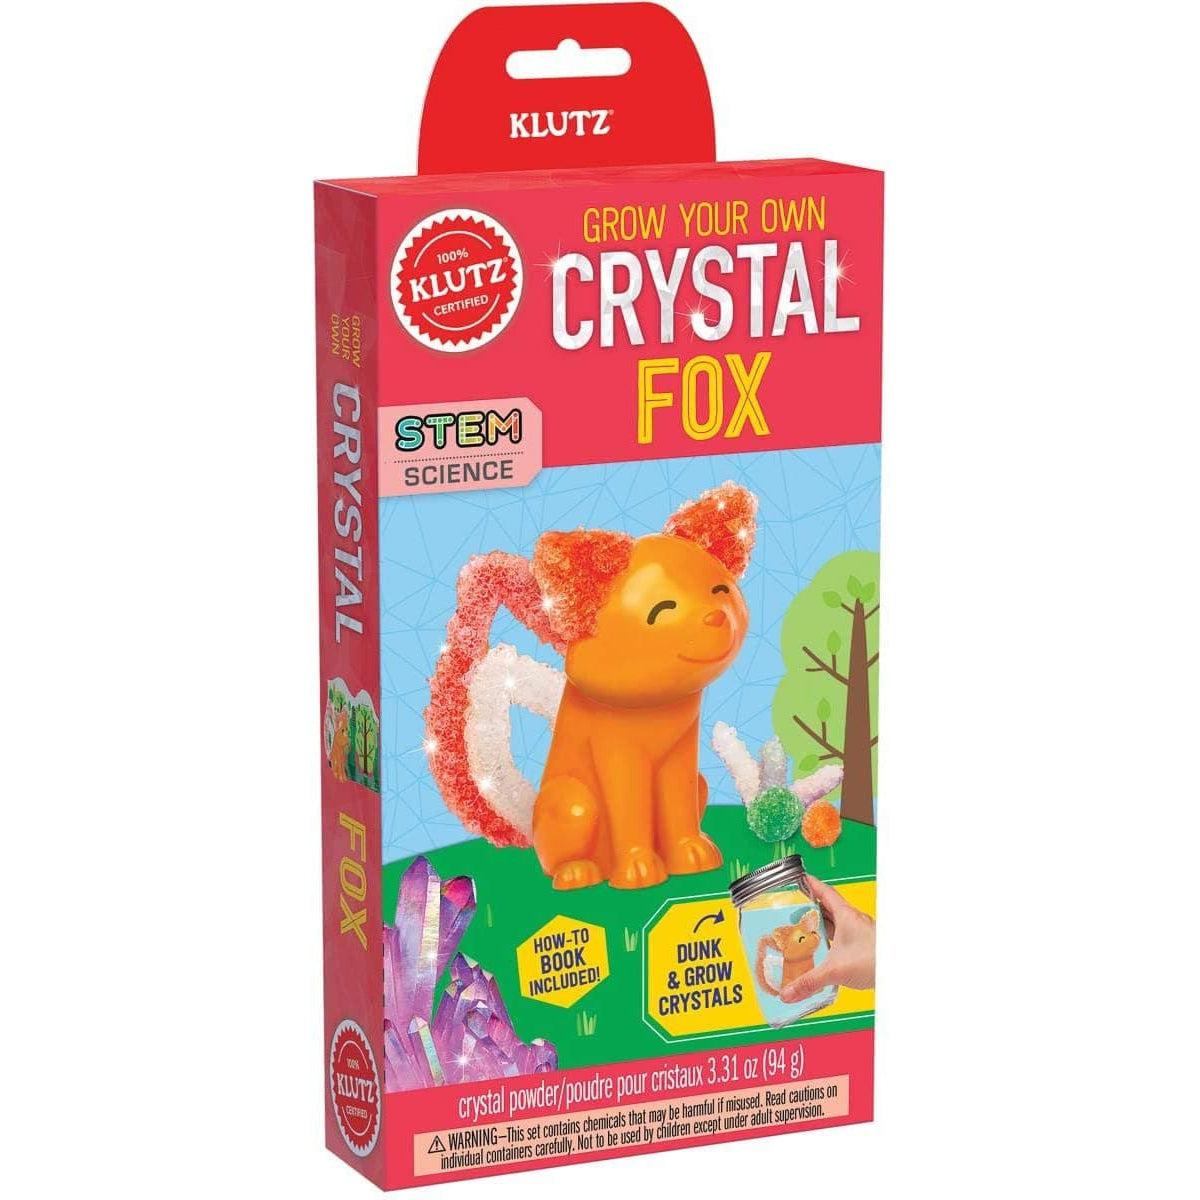 Klutz-Grow Your Own Crystal Fox-9781338365528-Legacy Toys